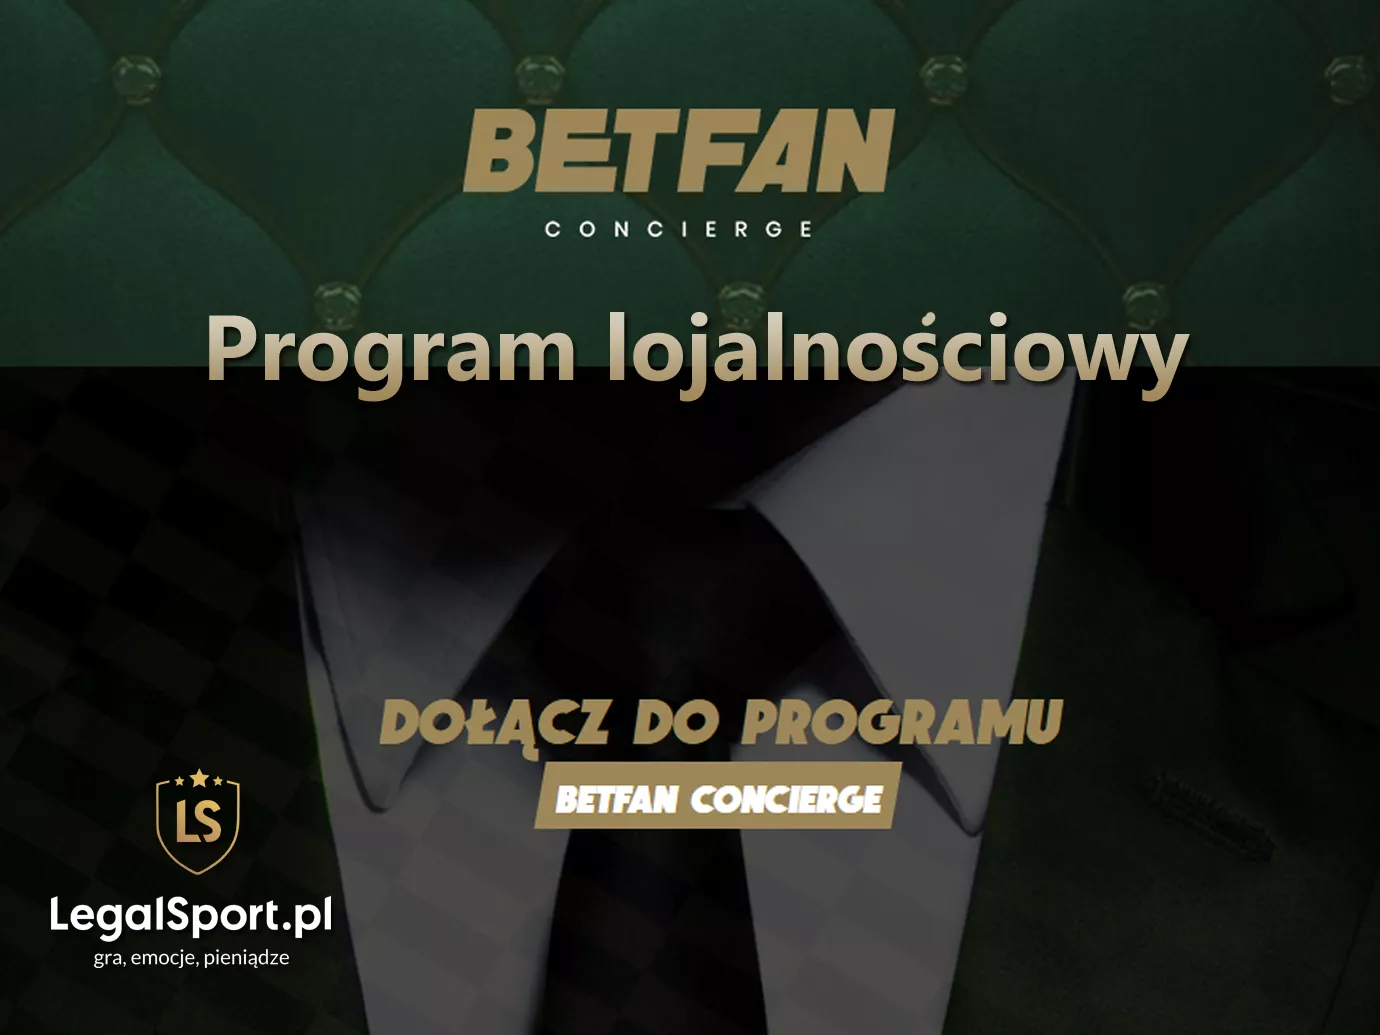 BETFAN Concierge - program lojalnościowy dla najlepszych graczy